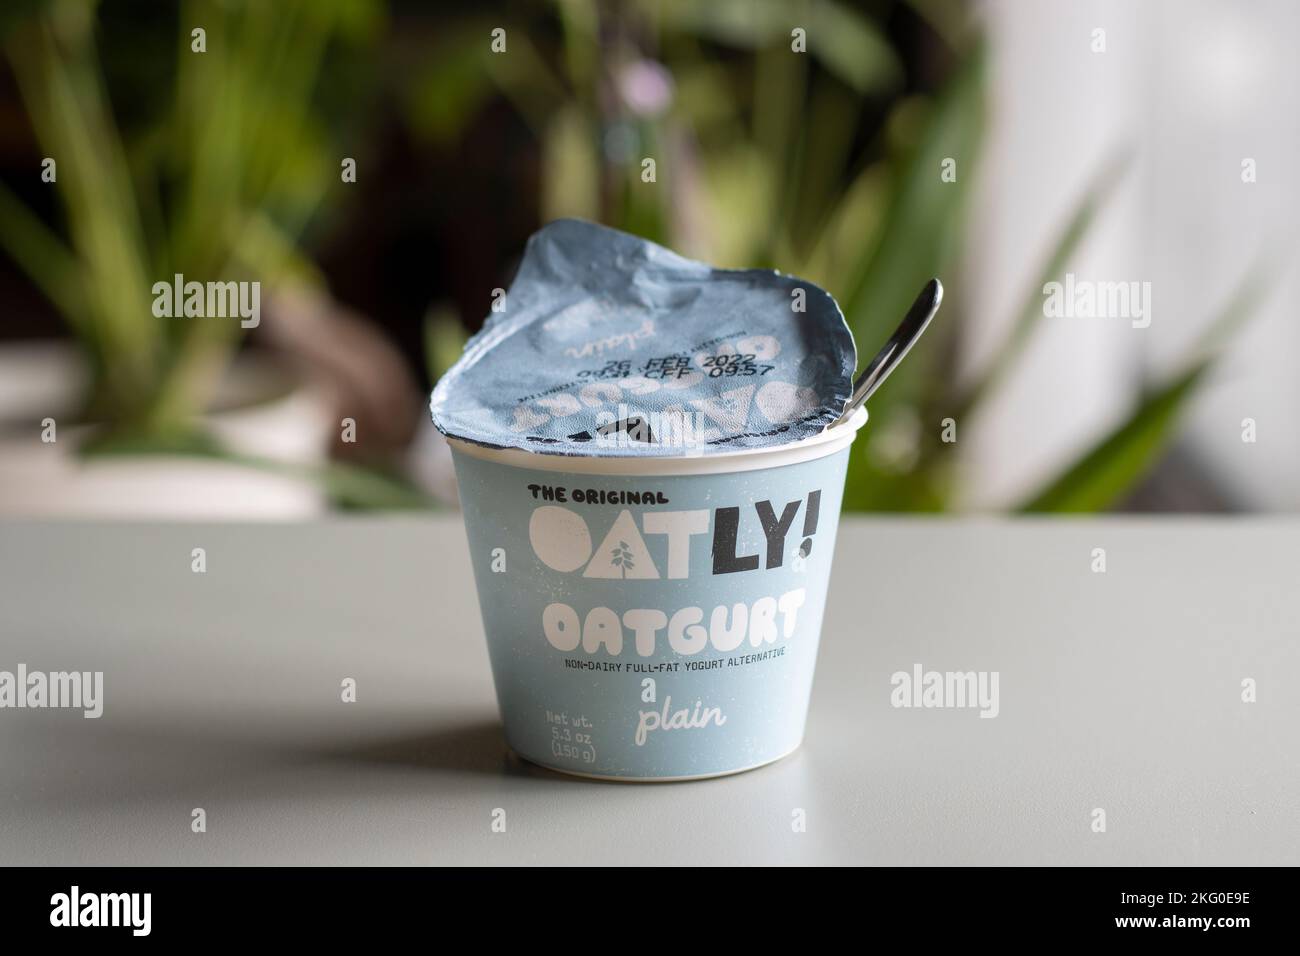 Una tazza di oatgurt semplice di marca Oatly, un'alternativa di yogurt intero non caseario prodotta da Oatly Group AB, con un cucchiaio in essa, isolato su un tavolo. Foto Stock